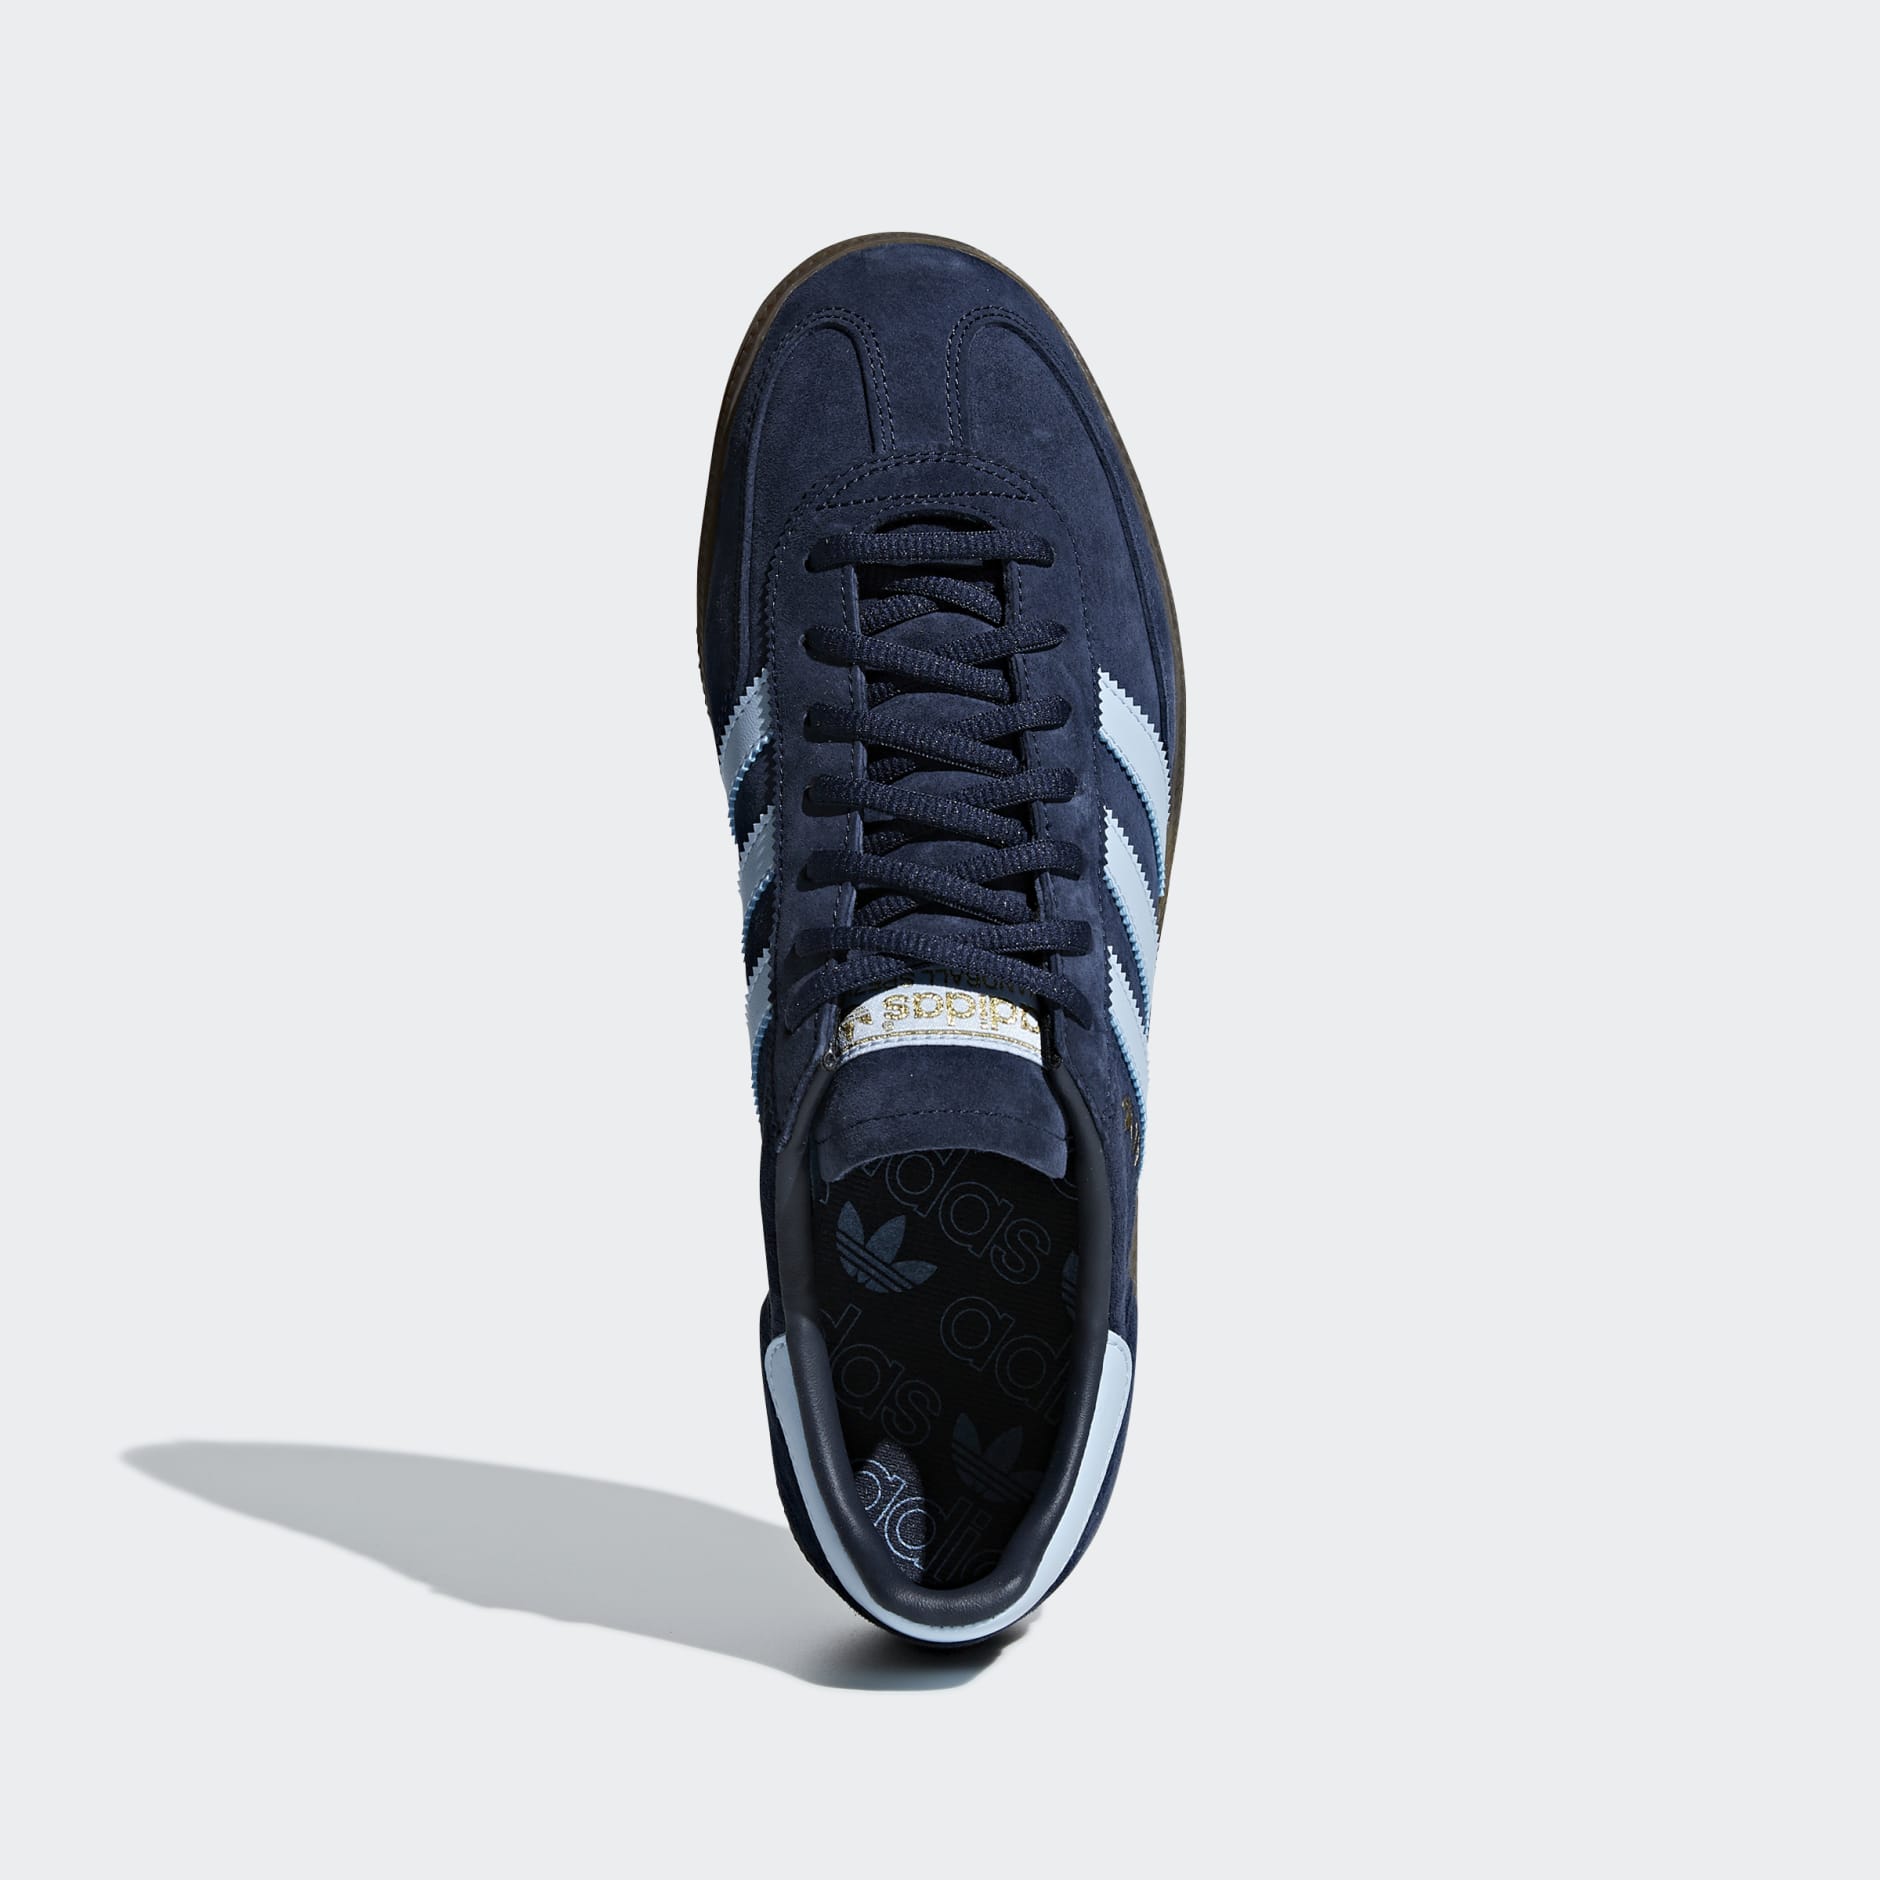 Shoes - Handball Spezial Shoes - Blue | adidas South Africa